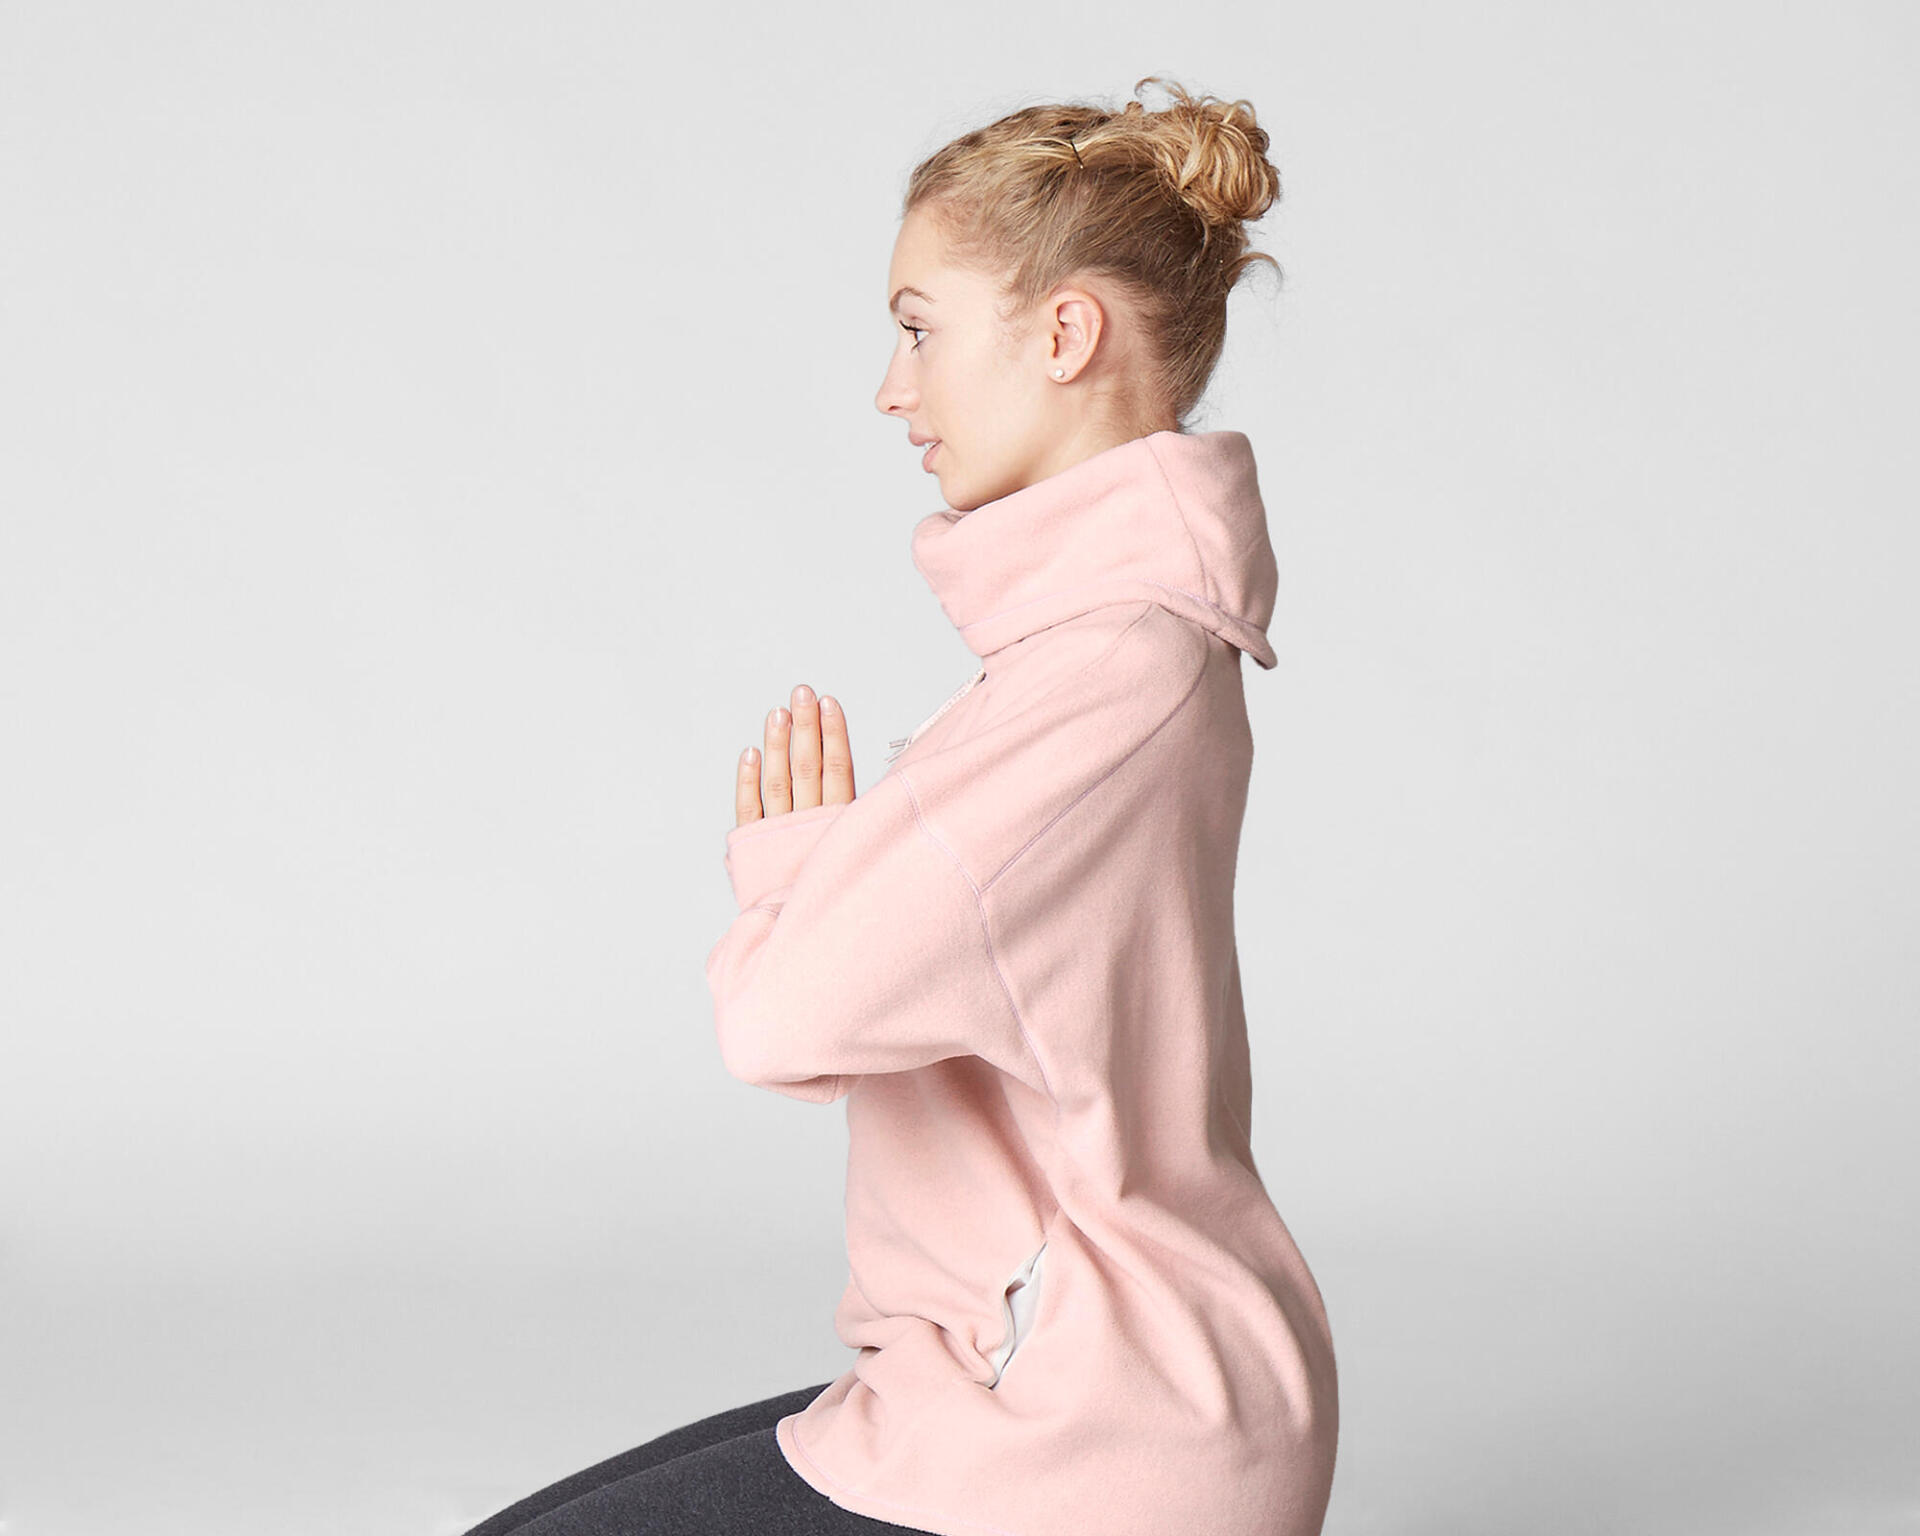 Woman with her yoga relaxation sweatshirt